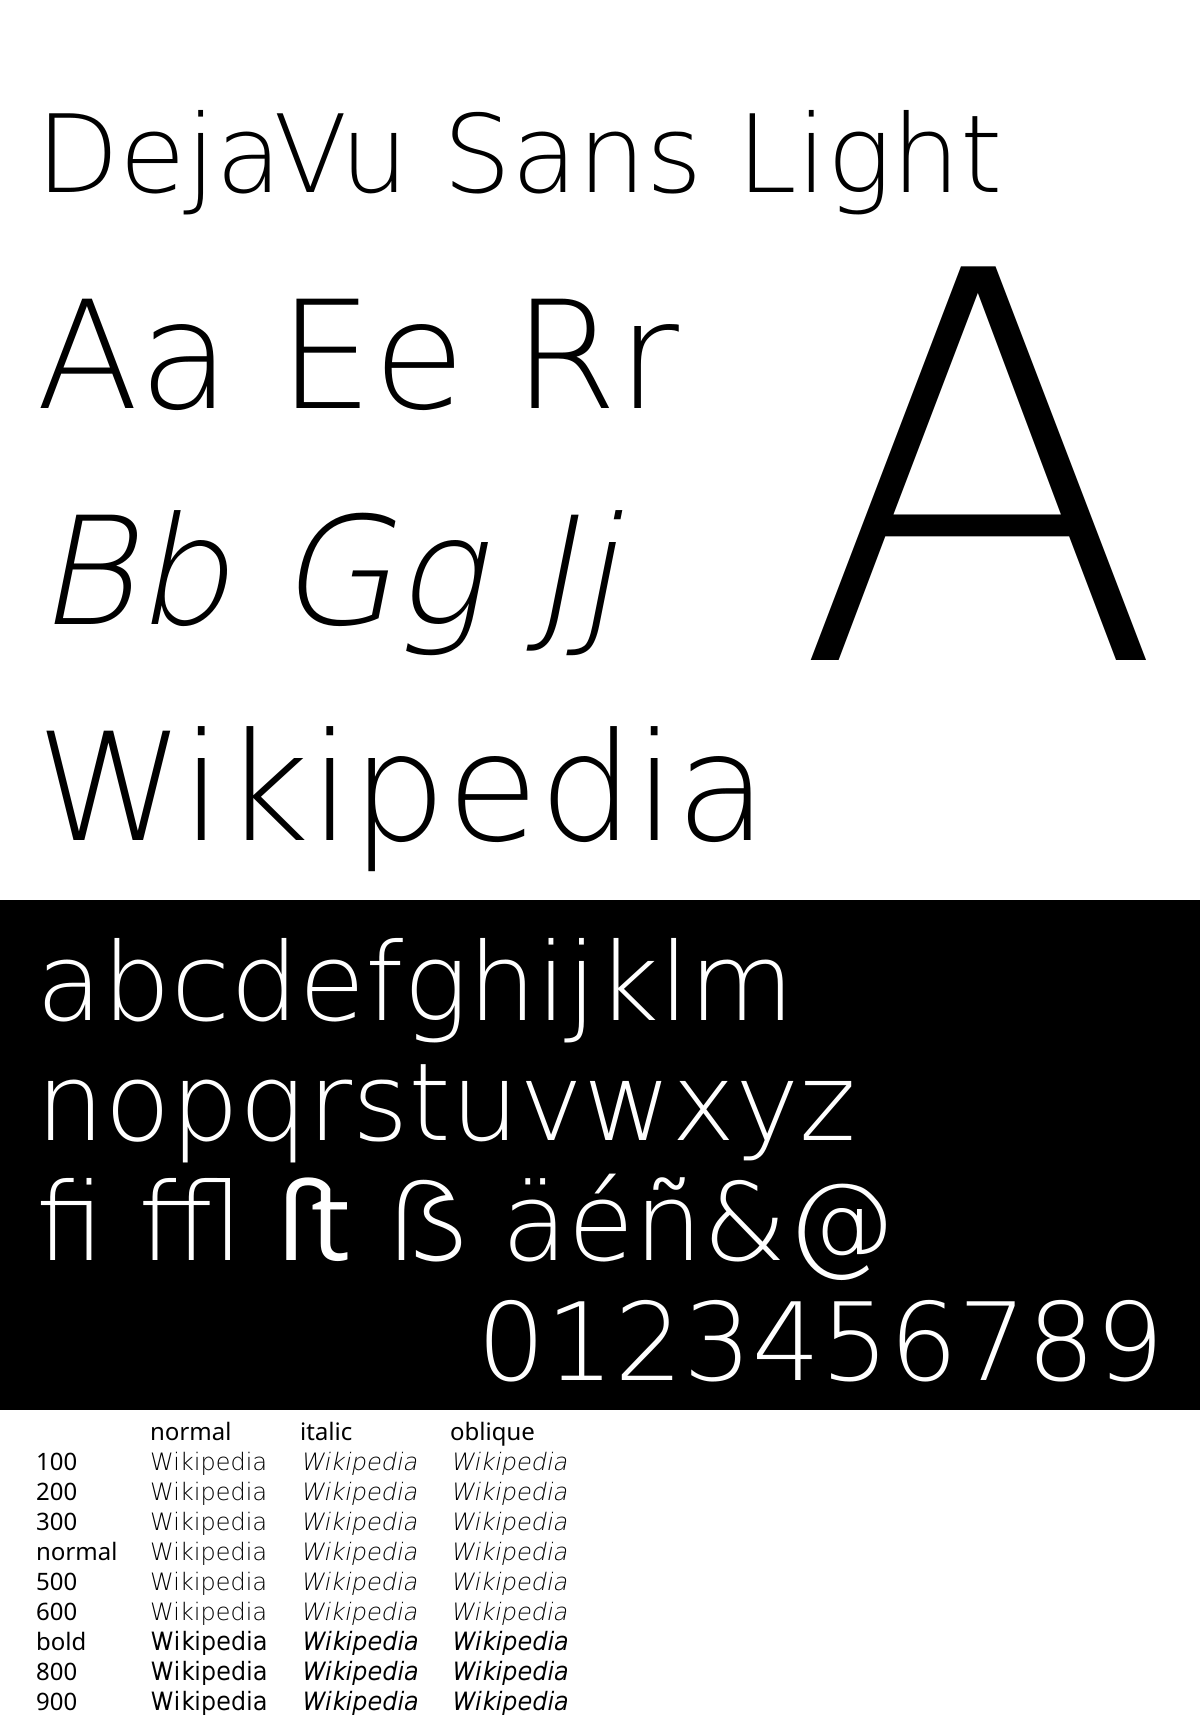 Шрифт Dejavu Sans. Ubuntu Light шрифт. Ubuntu font Family. Font Weight. Sans light шрифт